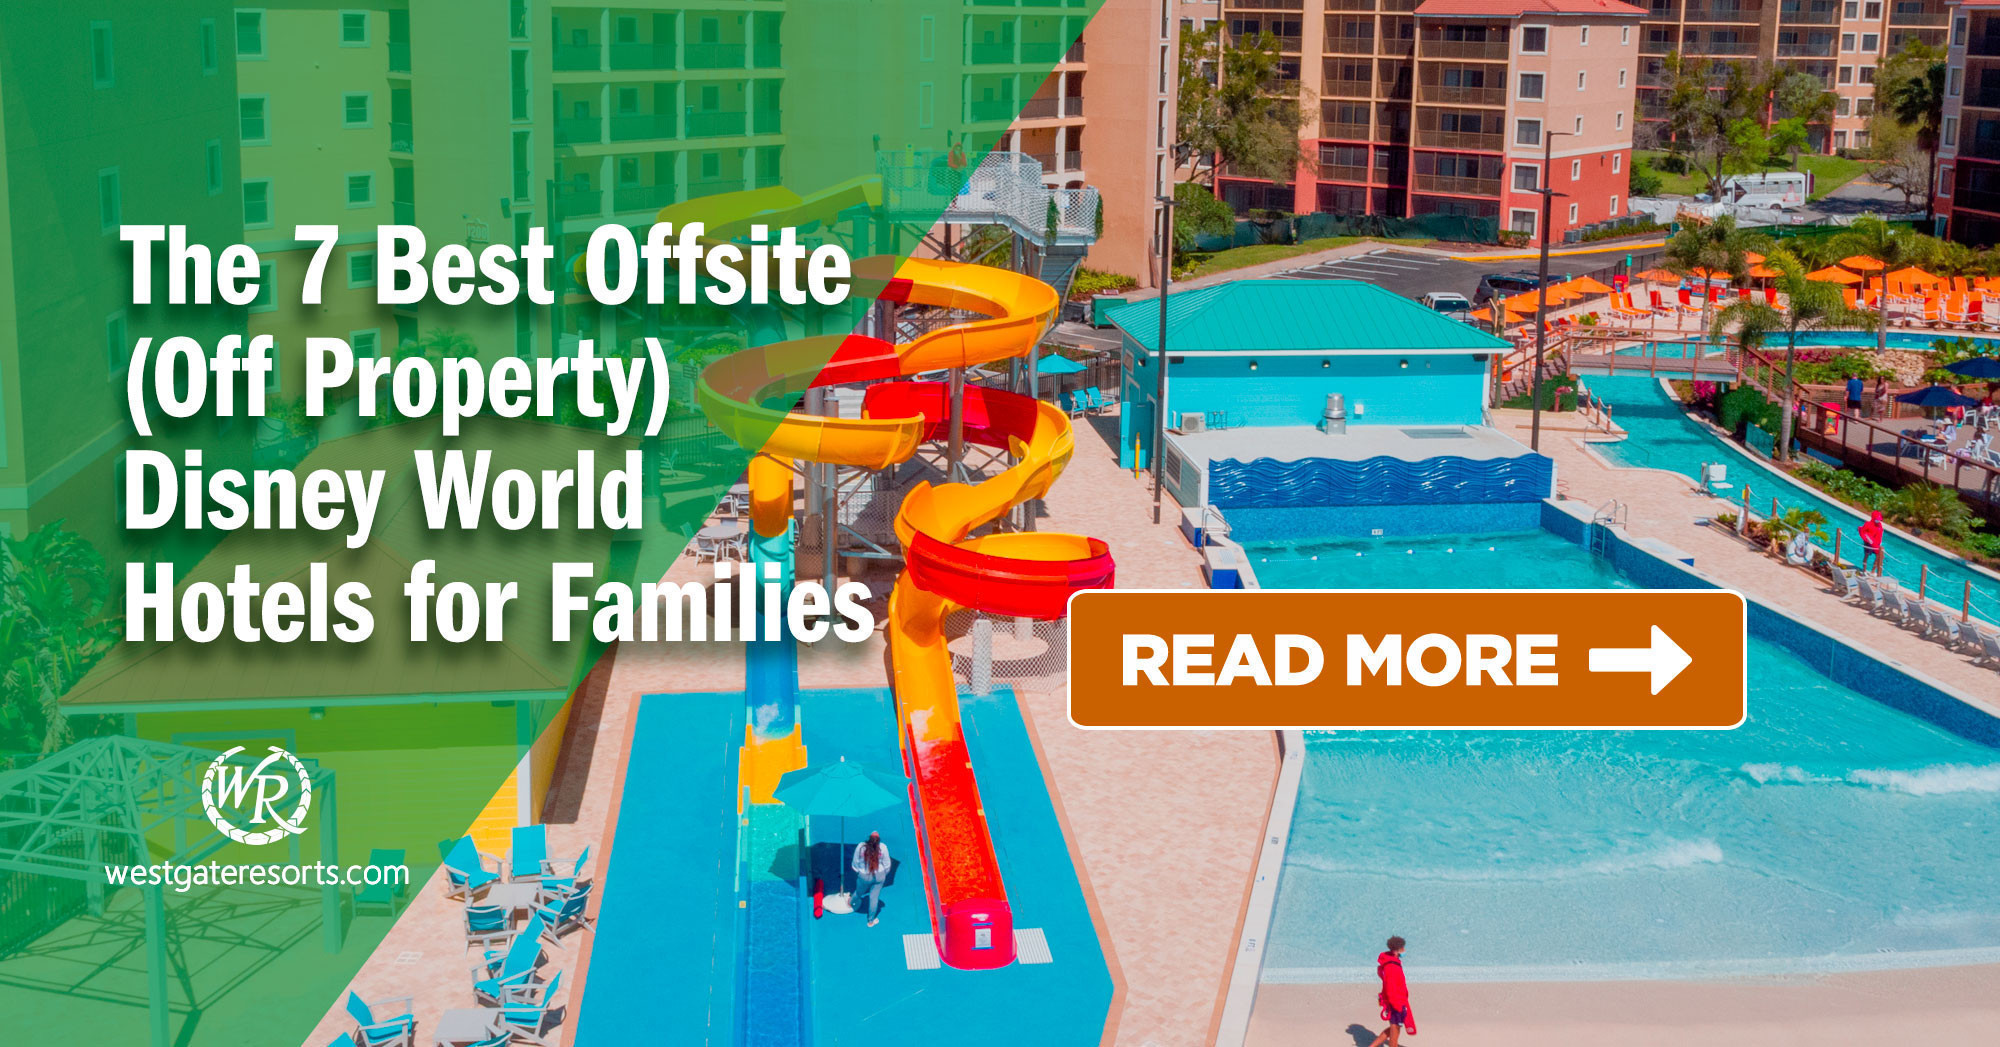 Los 7 mejores hoteles fuera del sitio (fuera de la propiedad) de Disney World para familias